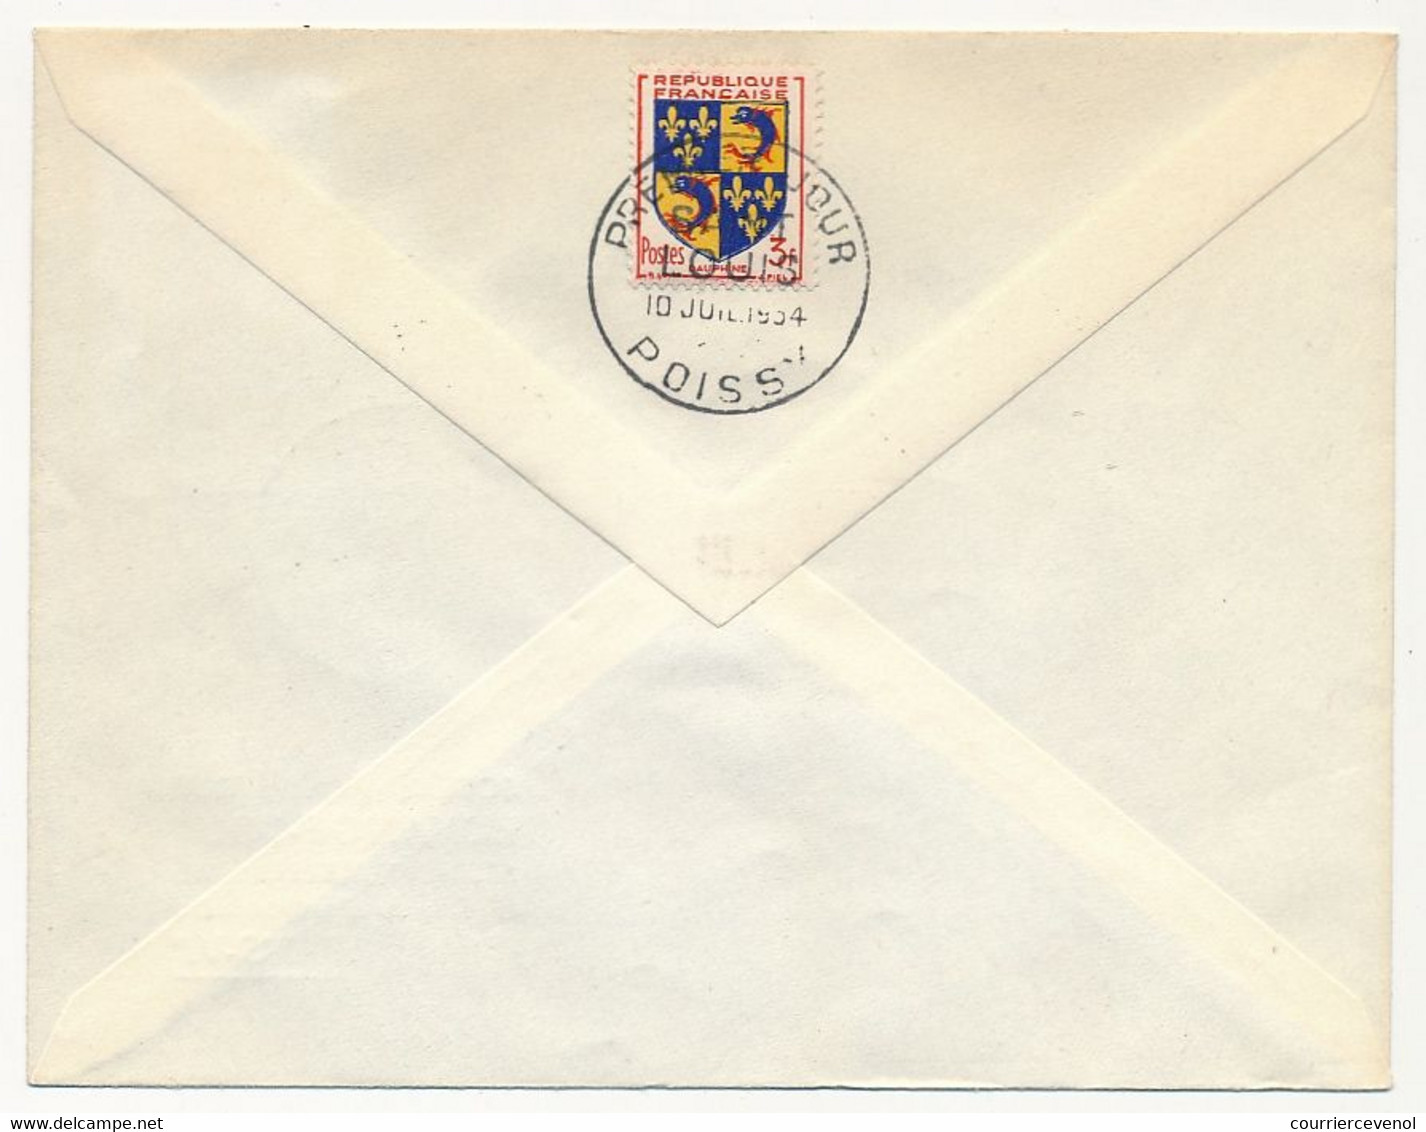 FRANCE => Enveloppe - SAINT LOUIS - Poissy 10 Juillet 1954 - Premier Jour - Covers & Documents